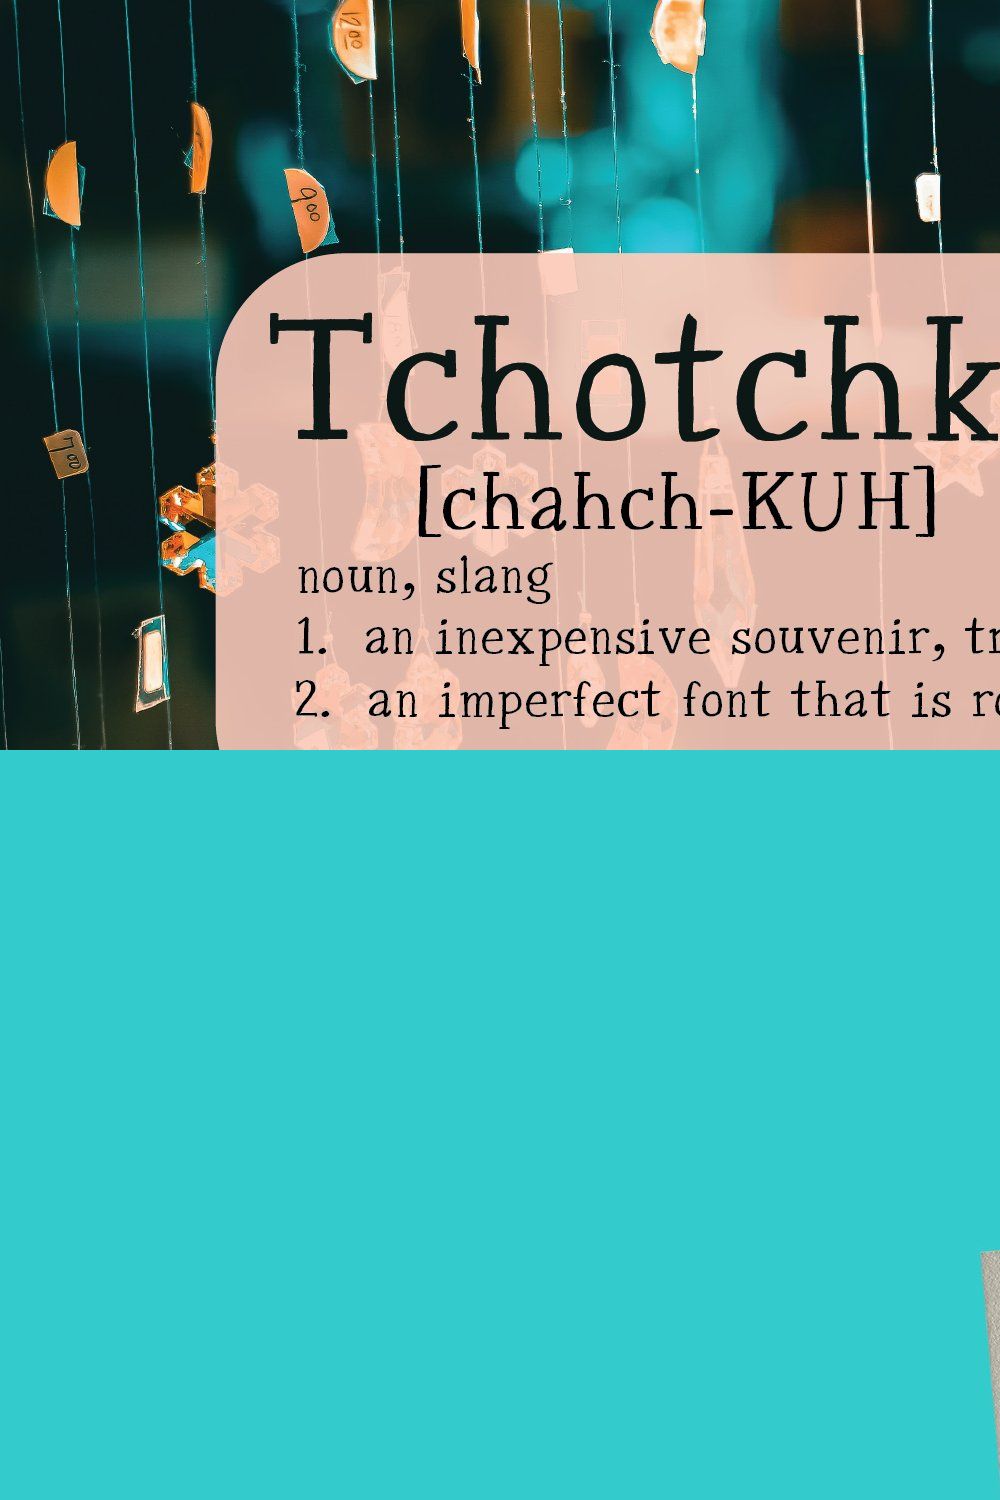 Tchotchke Serif pinterest preview image.